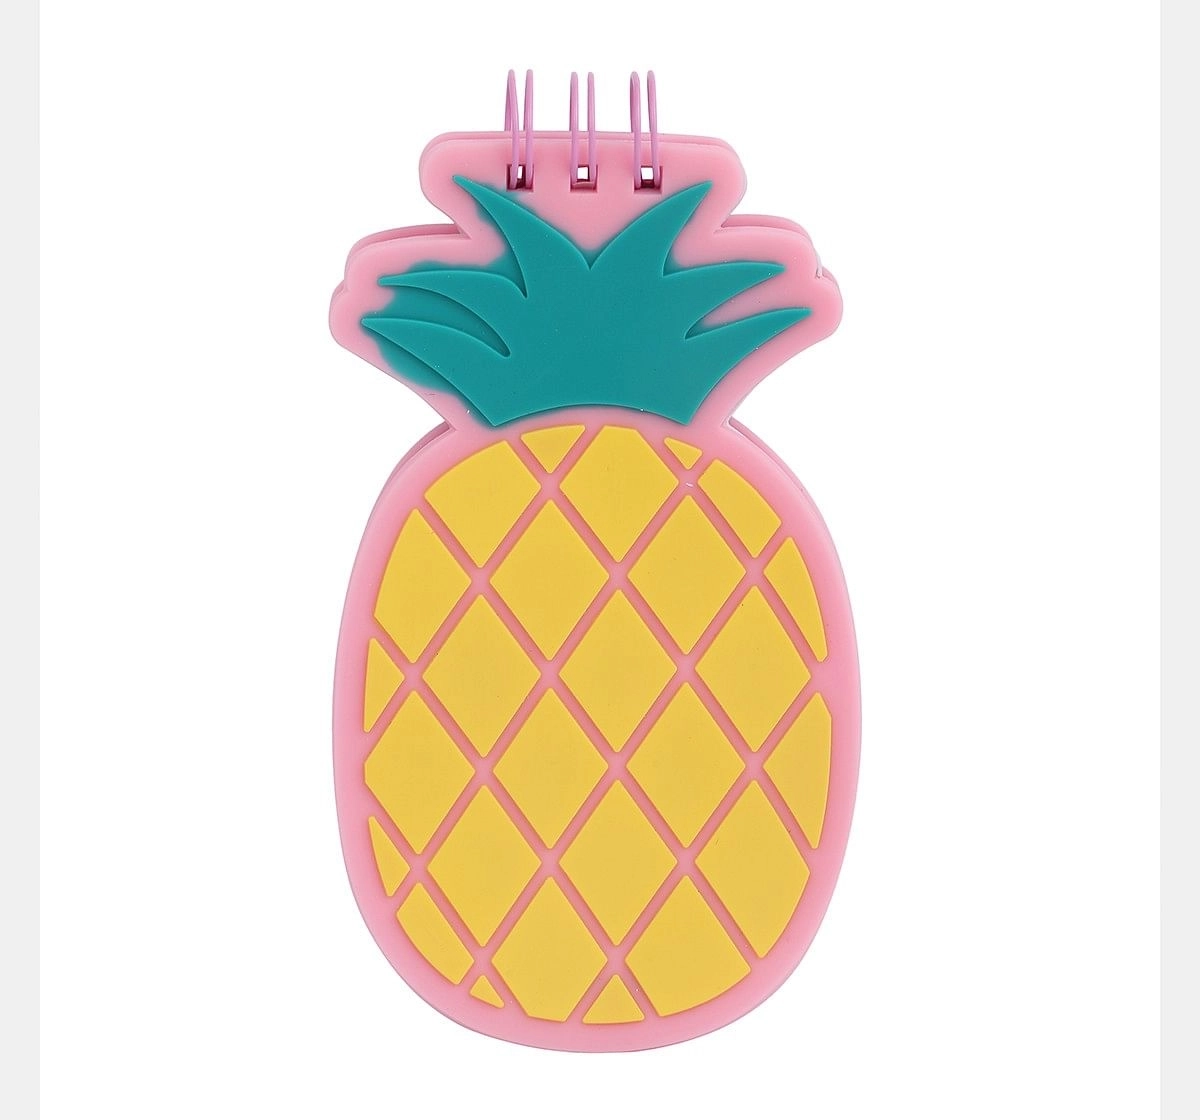 Hamster London Notepad Pineapple, 6Y+